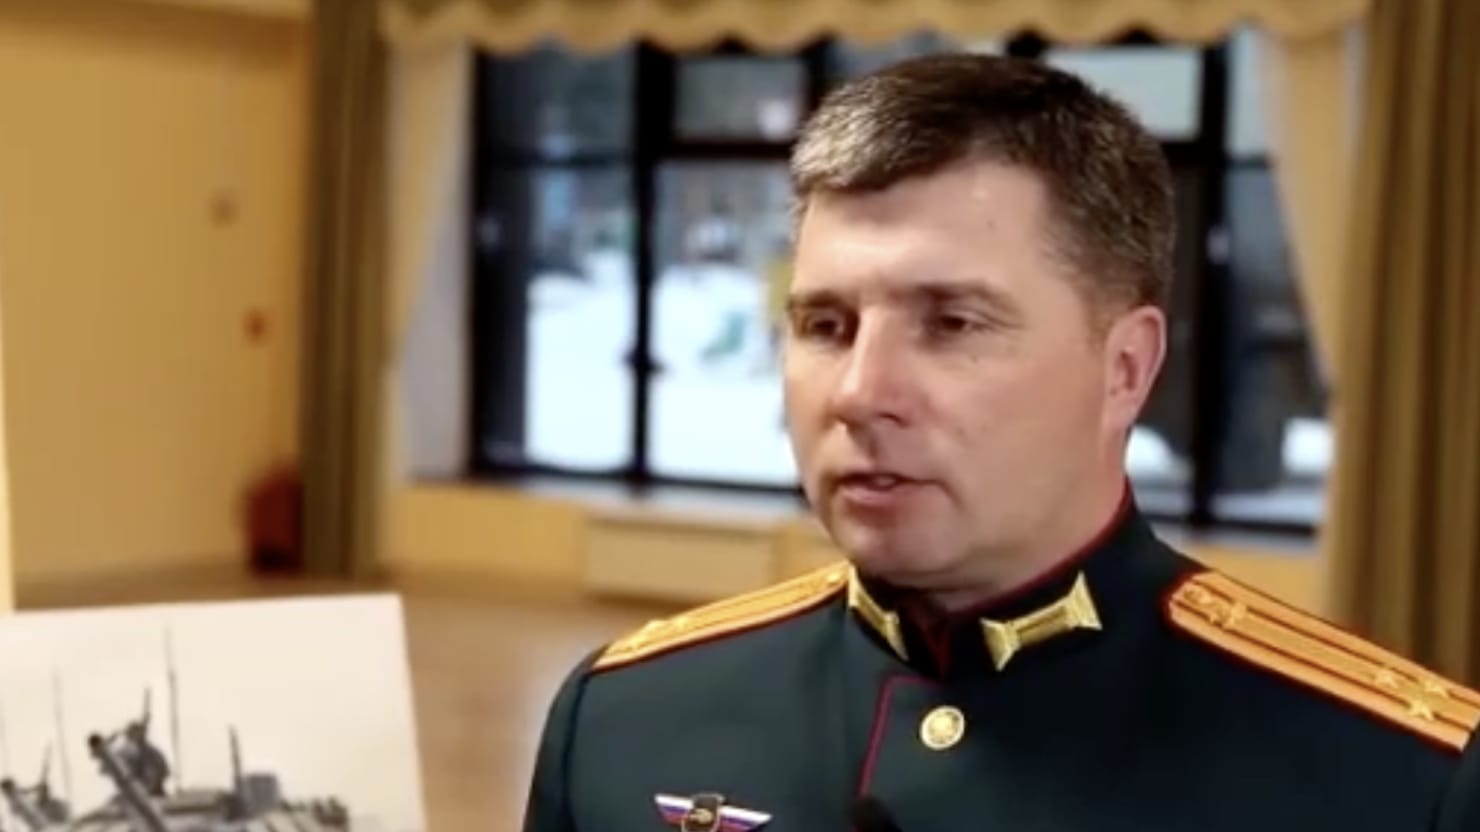 قام الجنرال الروسي فلاديمير سافاتسكي بتفجير نفسه في منجم في أوكرانيا